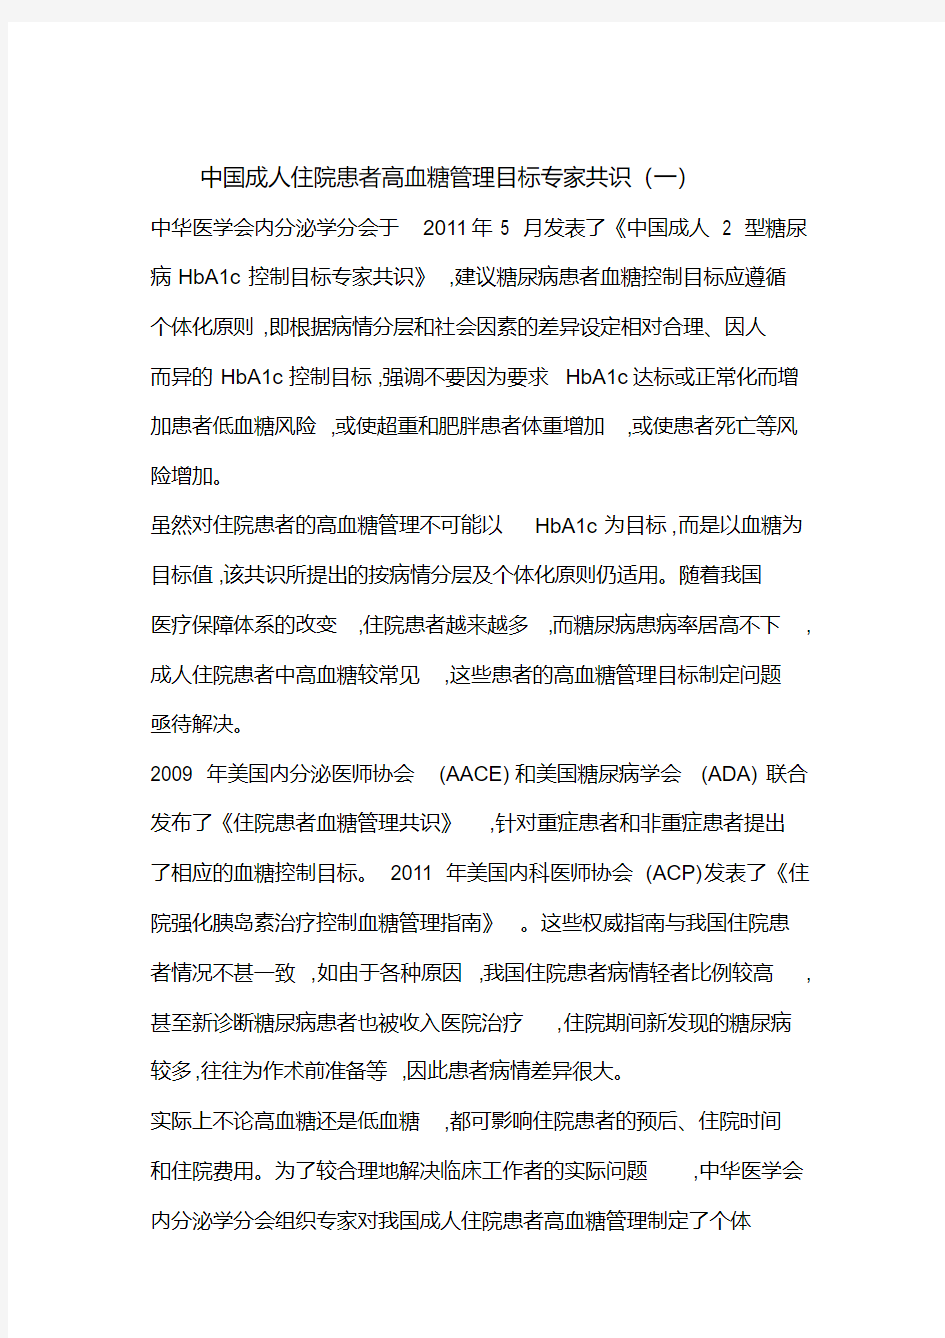 中国成人住院患者高血糖管理目标专家共识(一).pdf